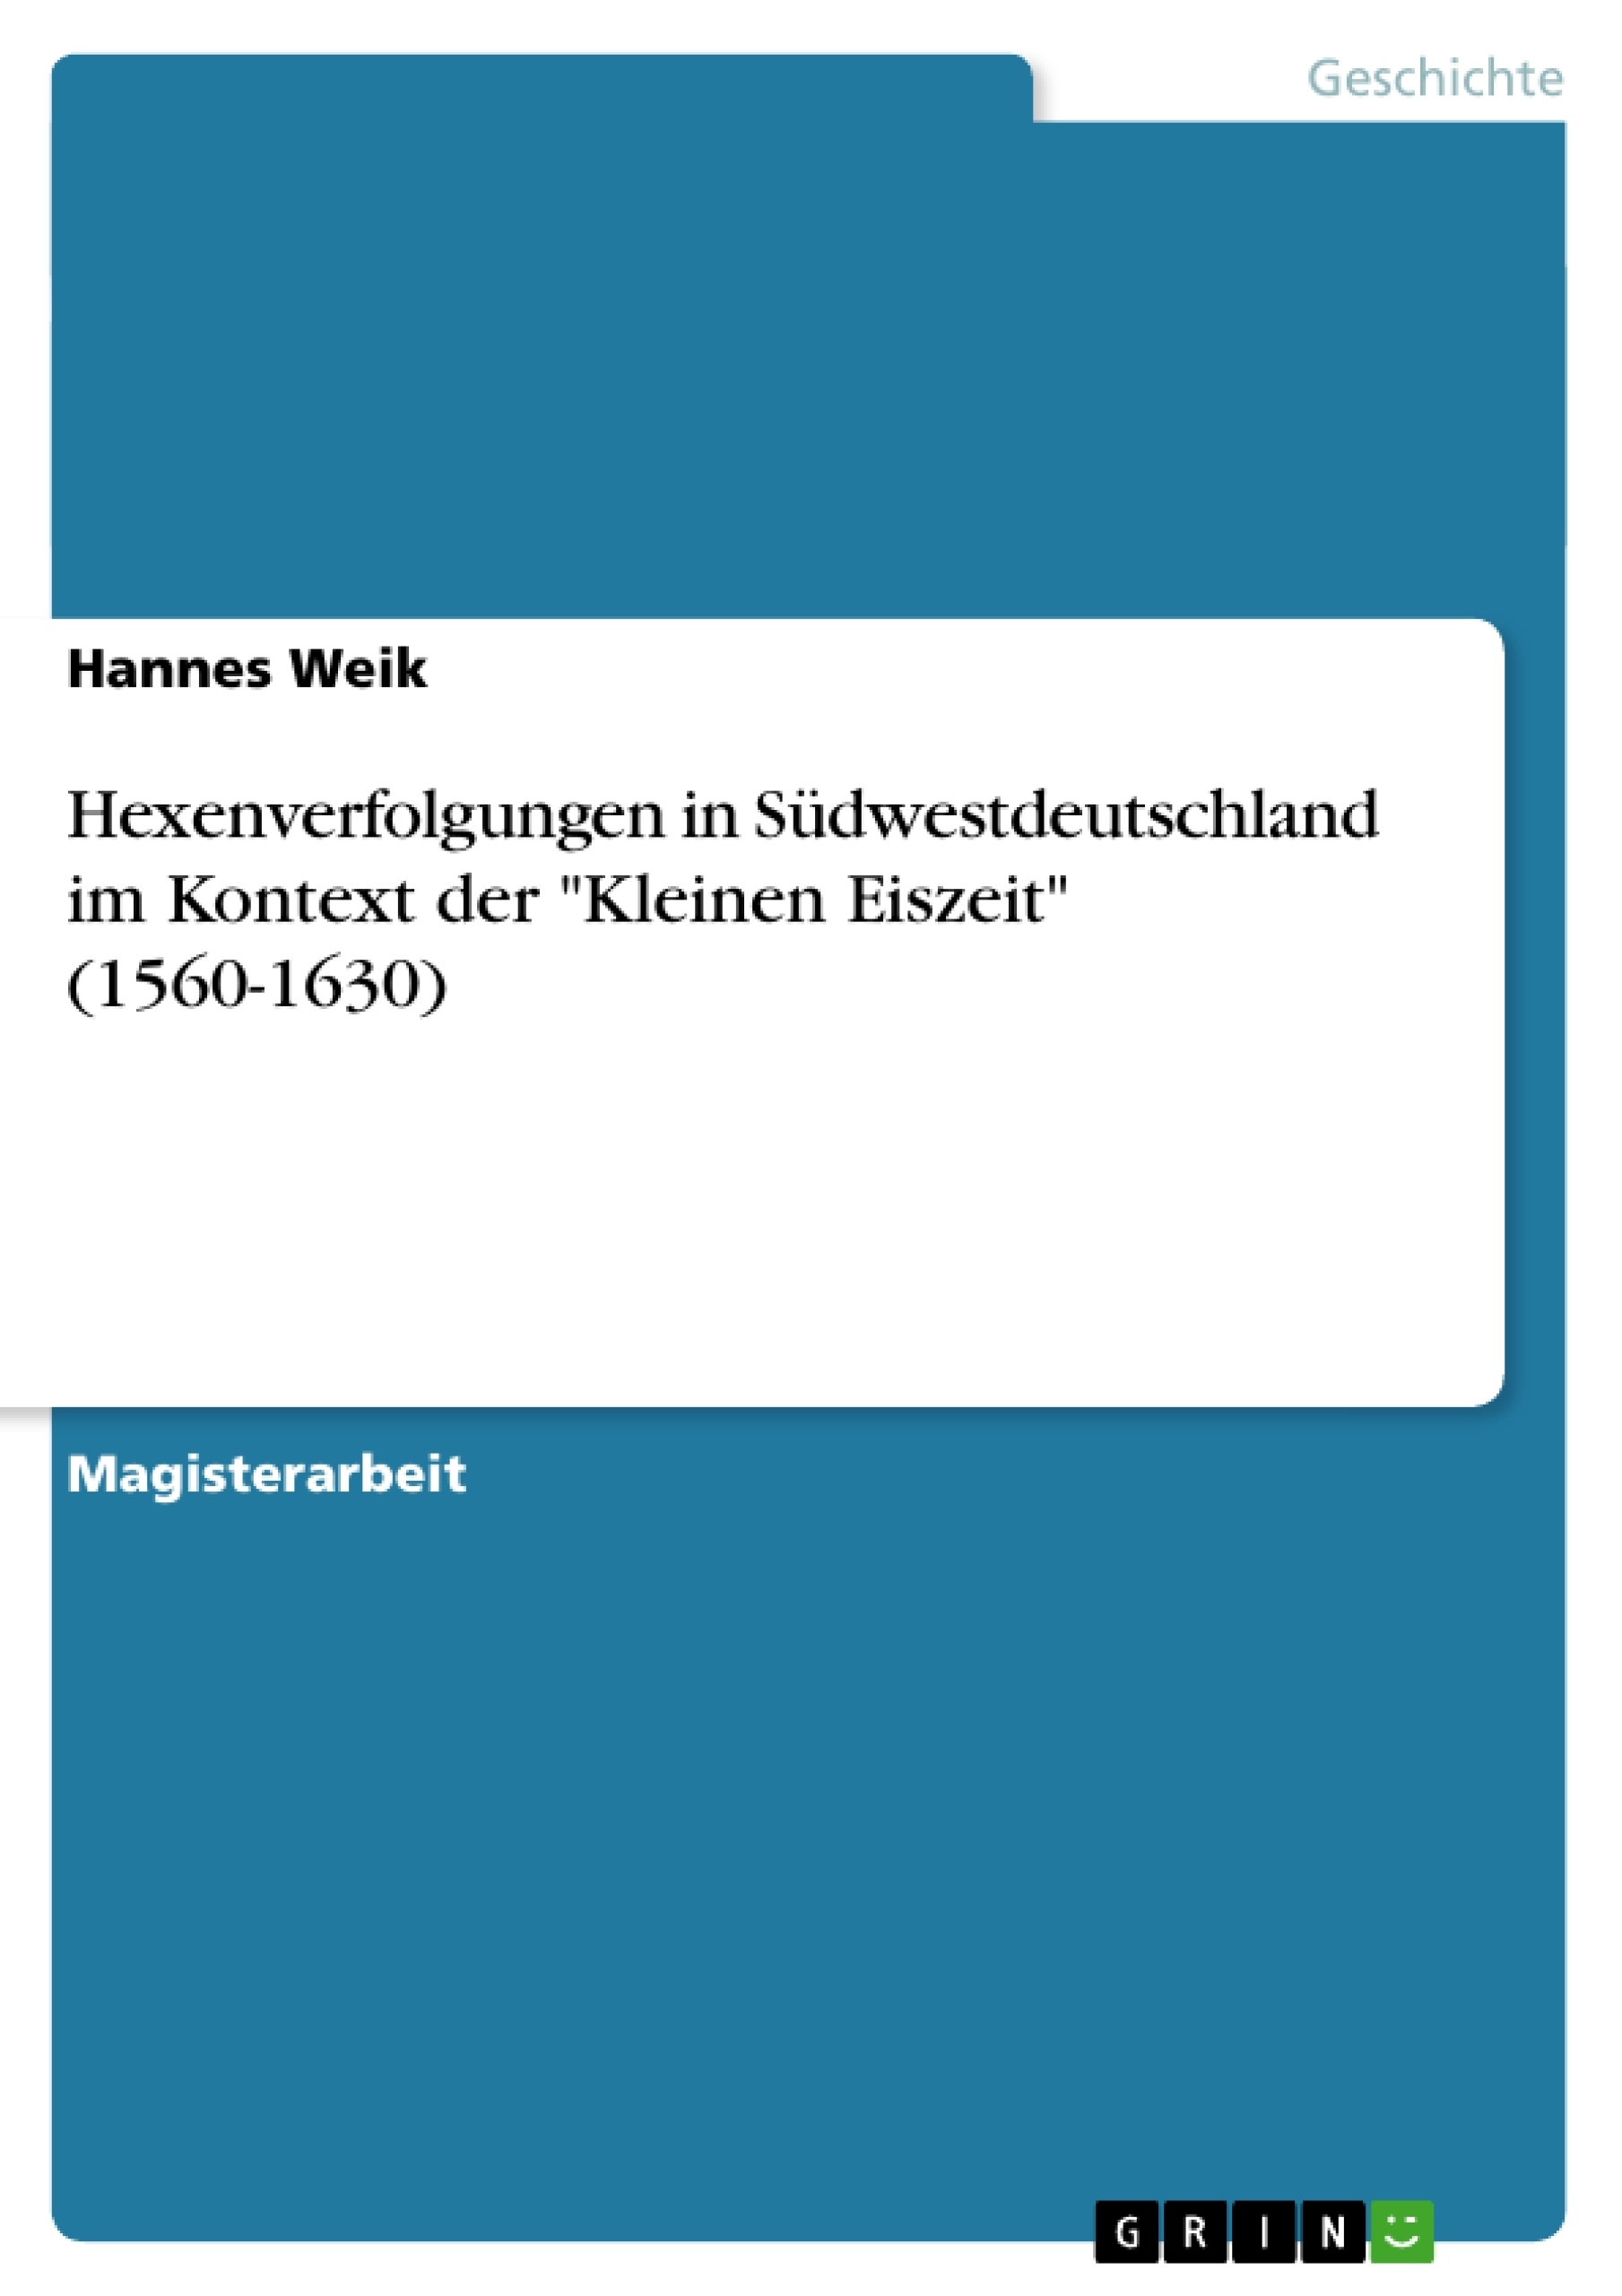 Titre: Hexenverfolgungen in Südwestdeutschland im Kontext der "Kleinen Eiszeit" (1560-1630)